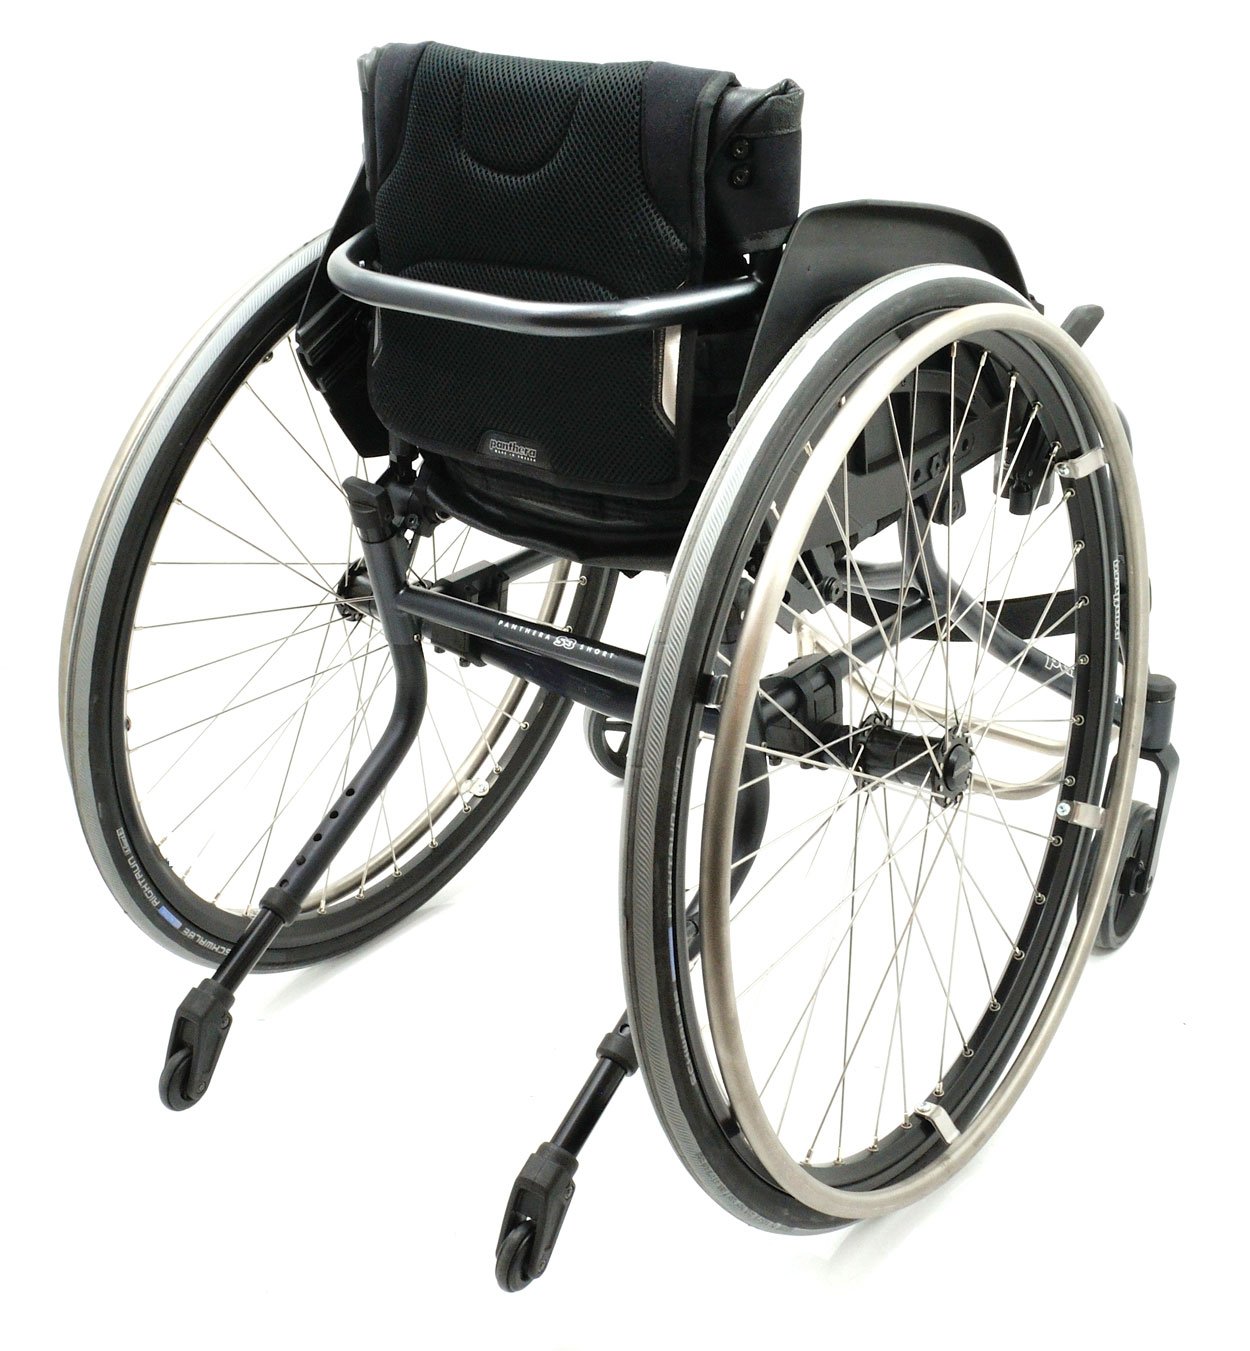 Активная инвалидная коляска PANTHERA S3 SHORT ABD